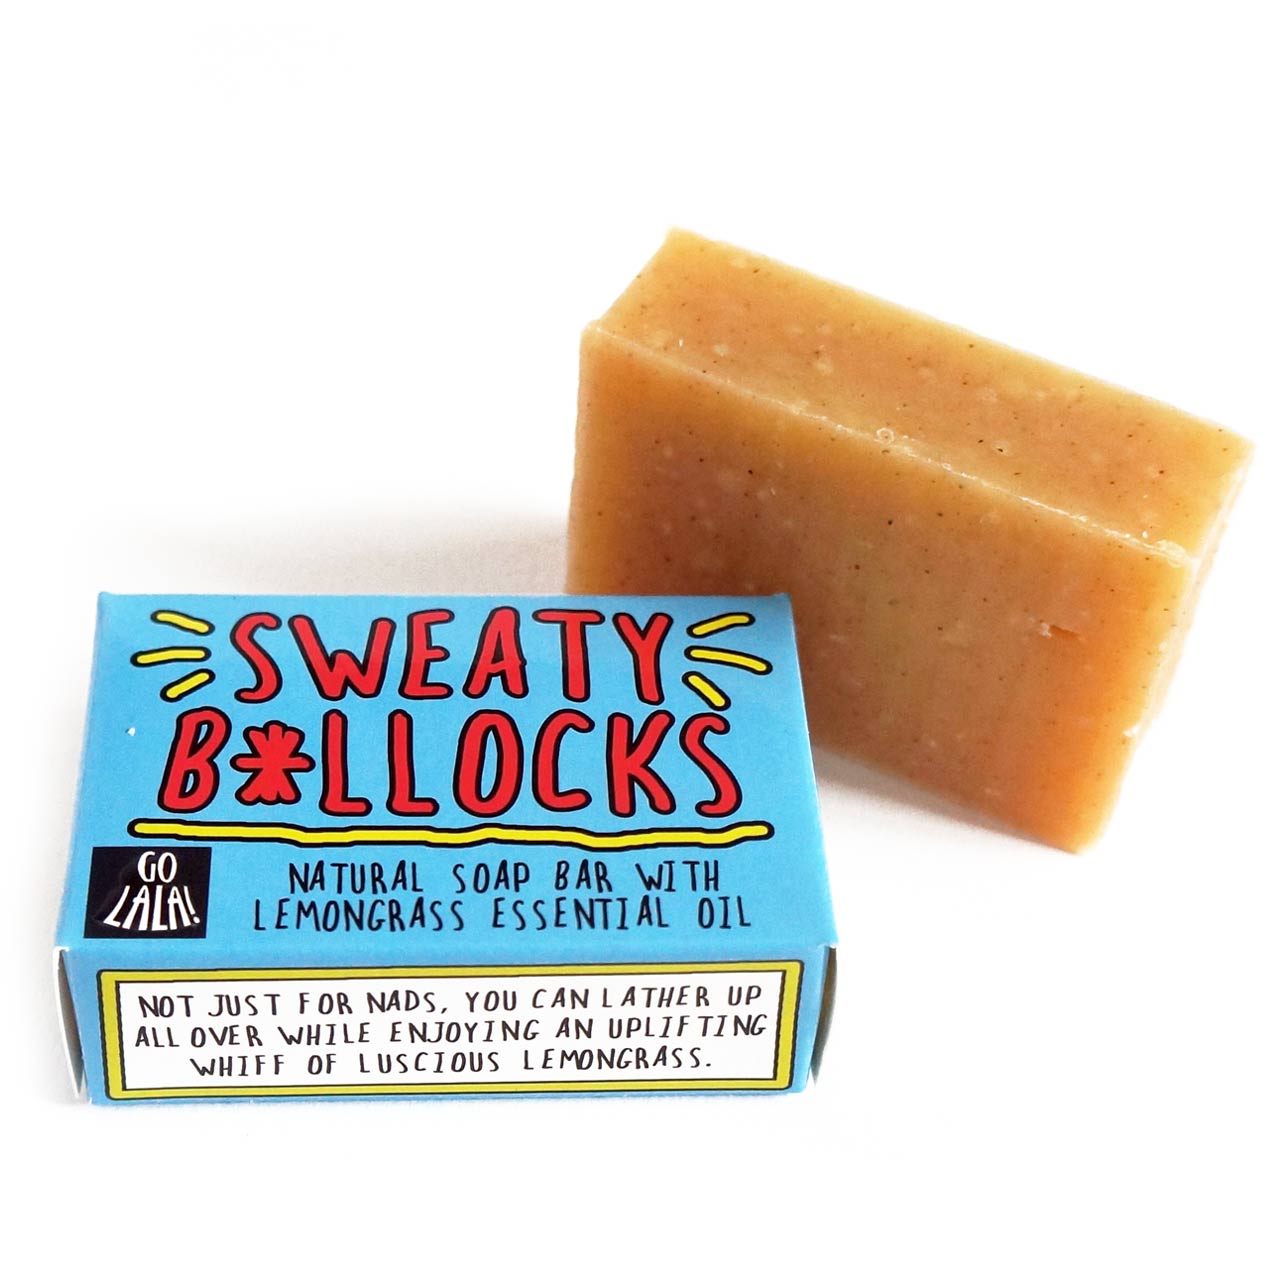 Sweaty Bollocks Natural Vegan Soap Bar